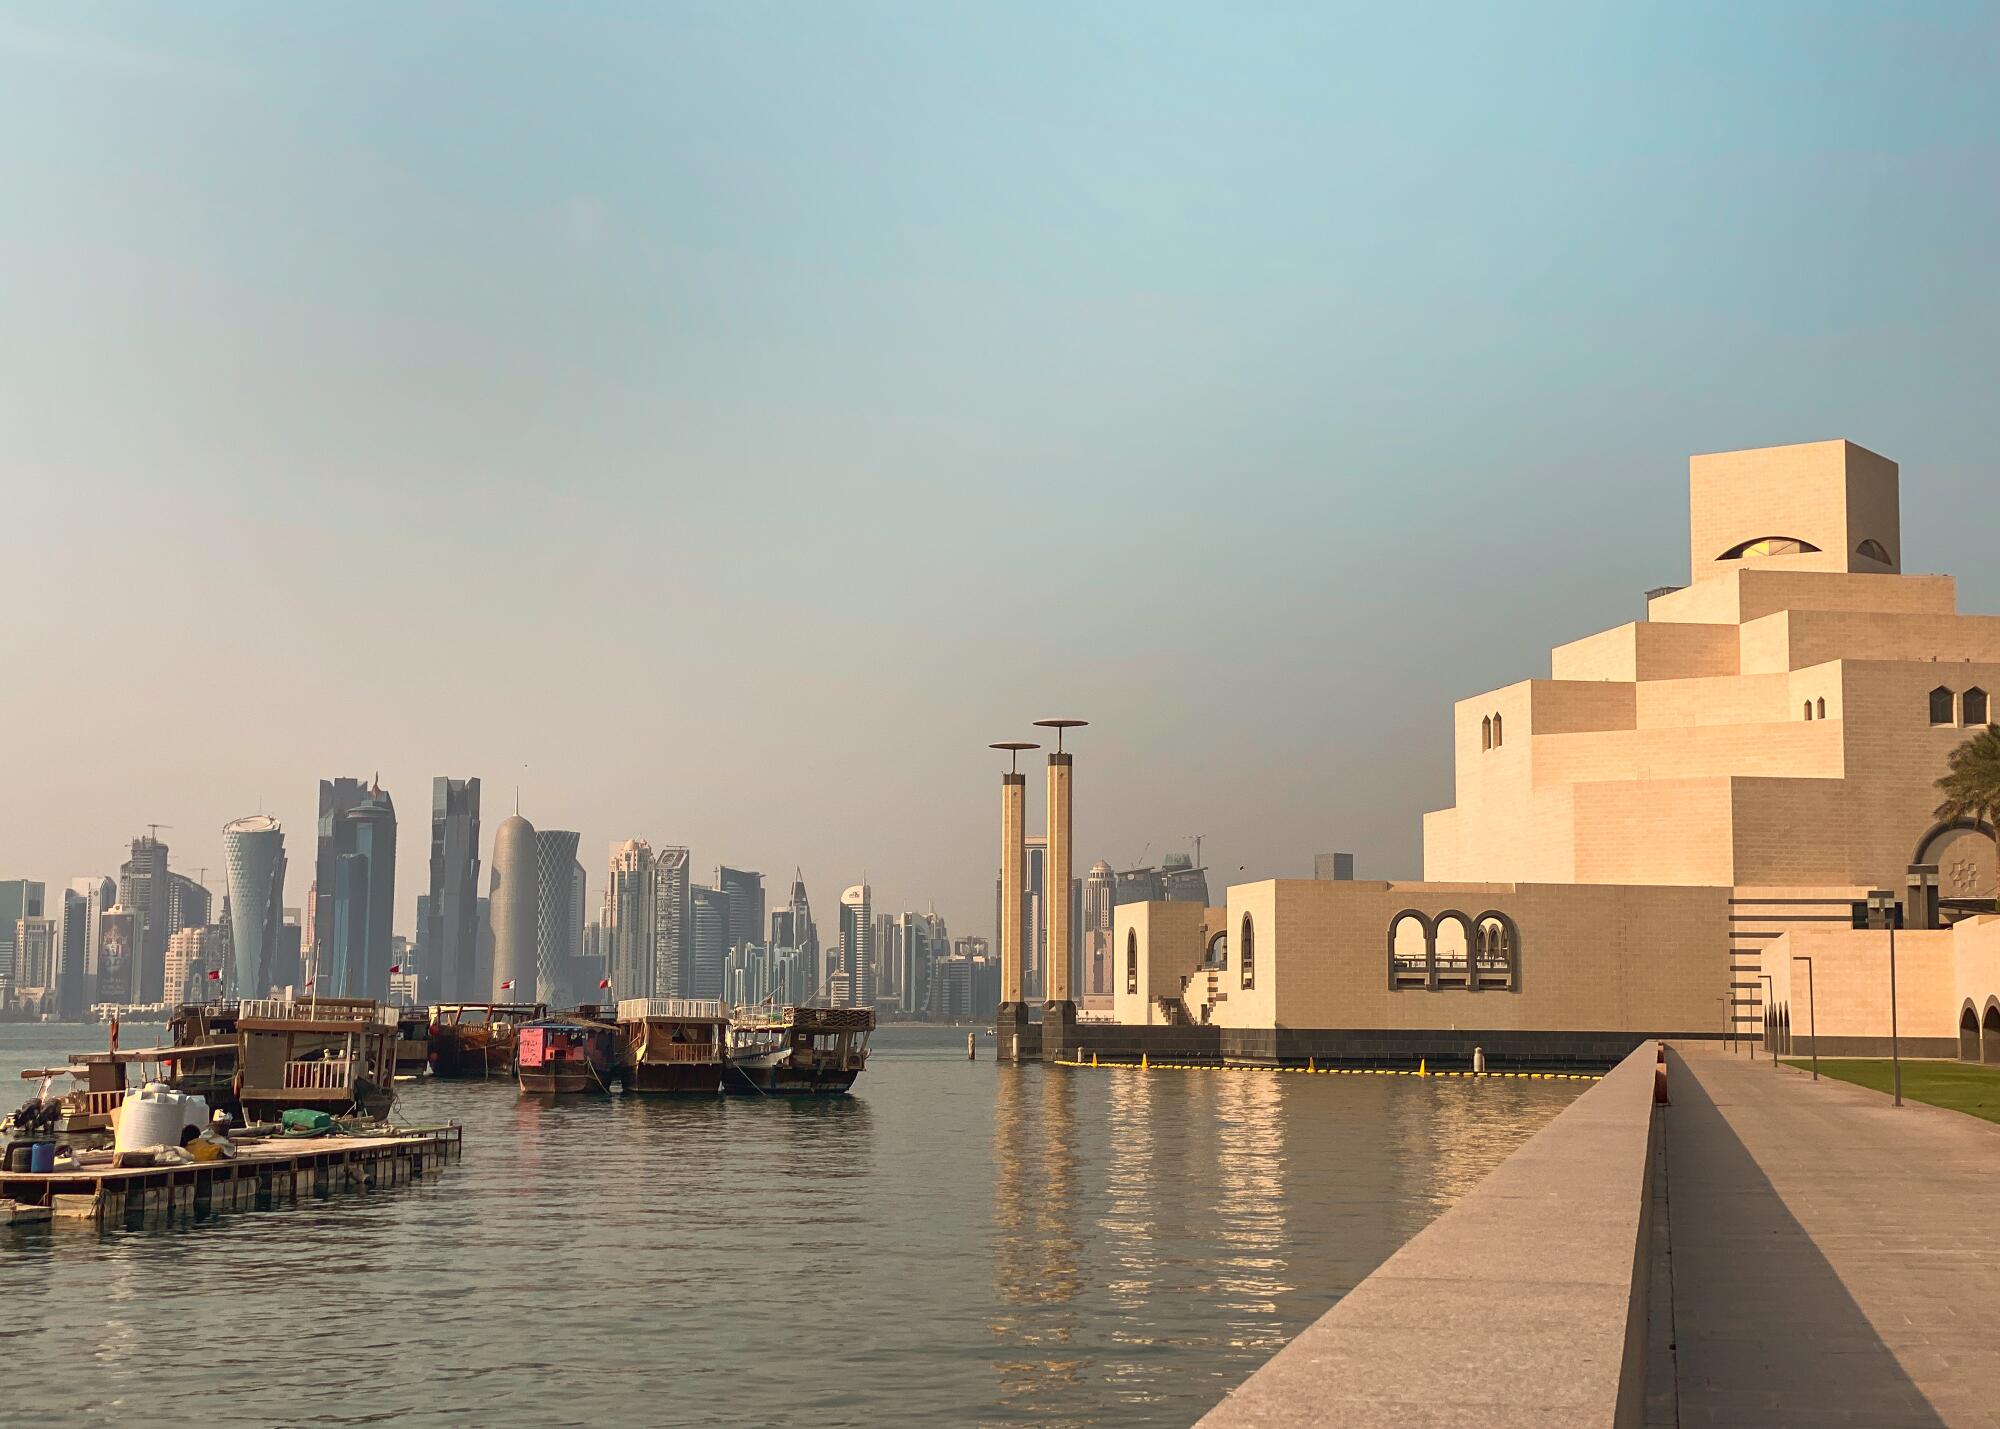 Doha Corniche, the Museum of Islamic Art (MIA).